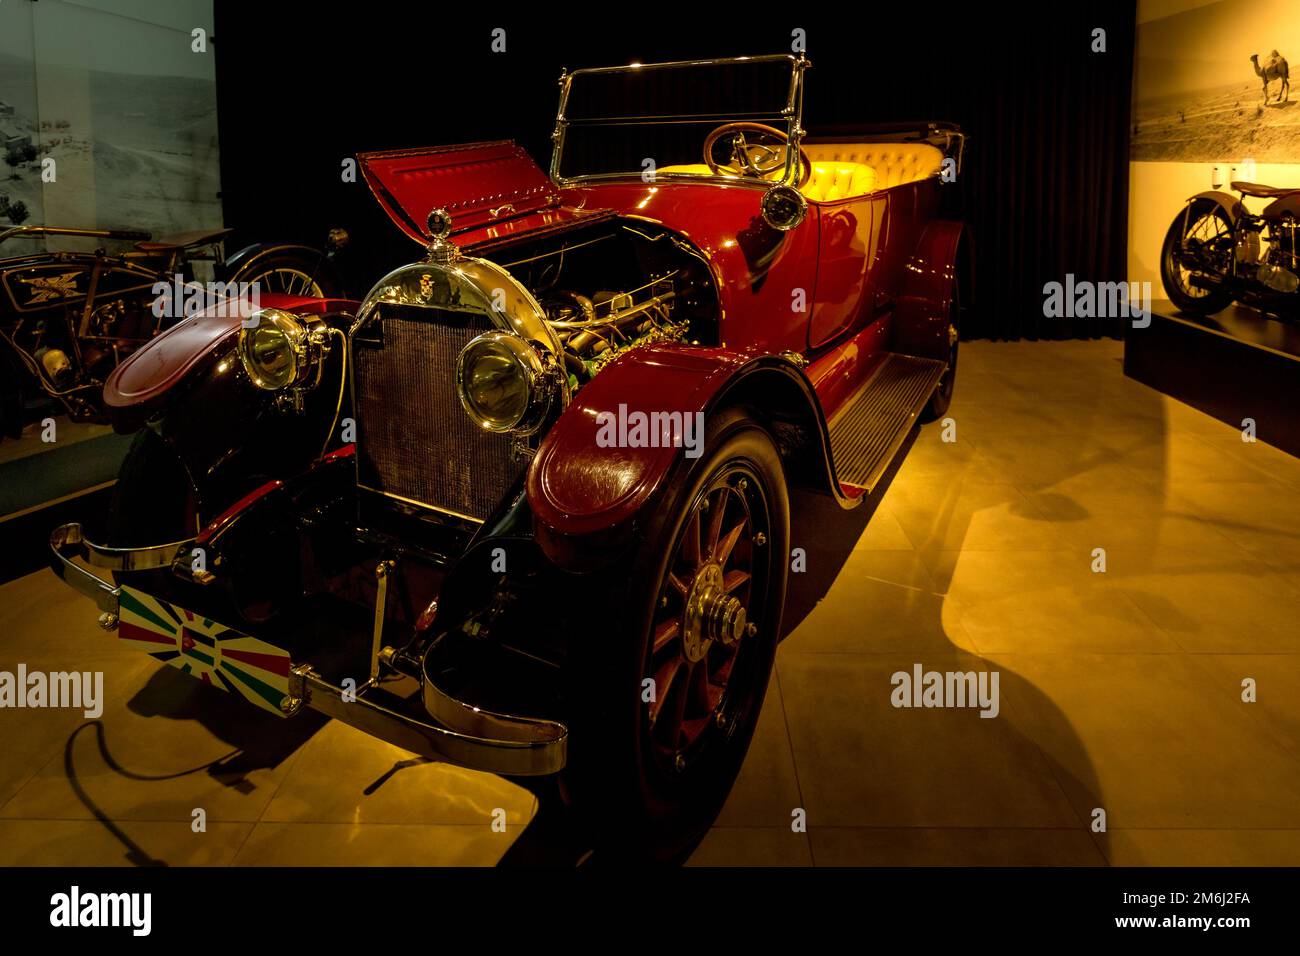 Amman, Jordanie, 07 décembre 2018 : Packard Twelve, Dual-Cowl Phaeton 1938, Body by Rollston à l'exposition dans le musée automobile du Roi Abdullah II à Am Banque D'Images